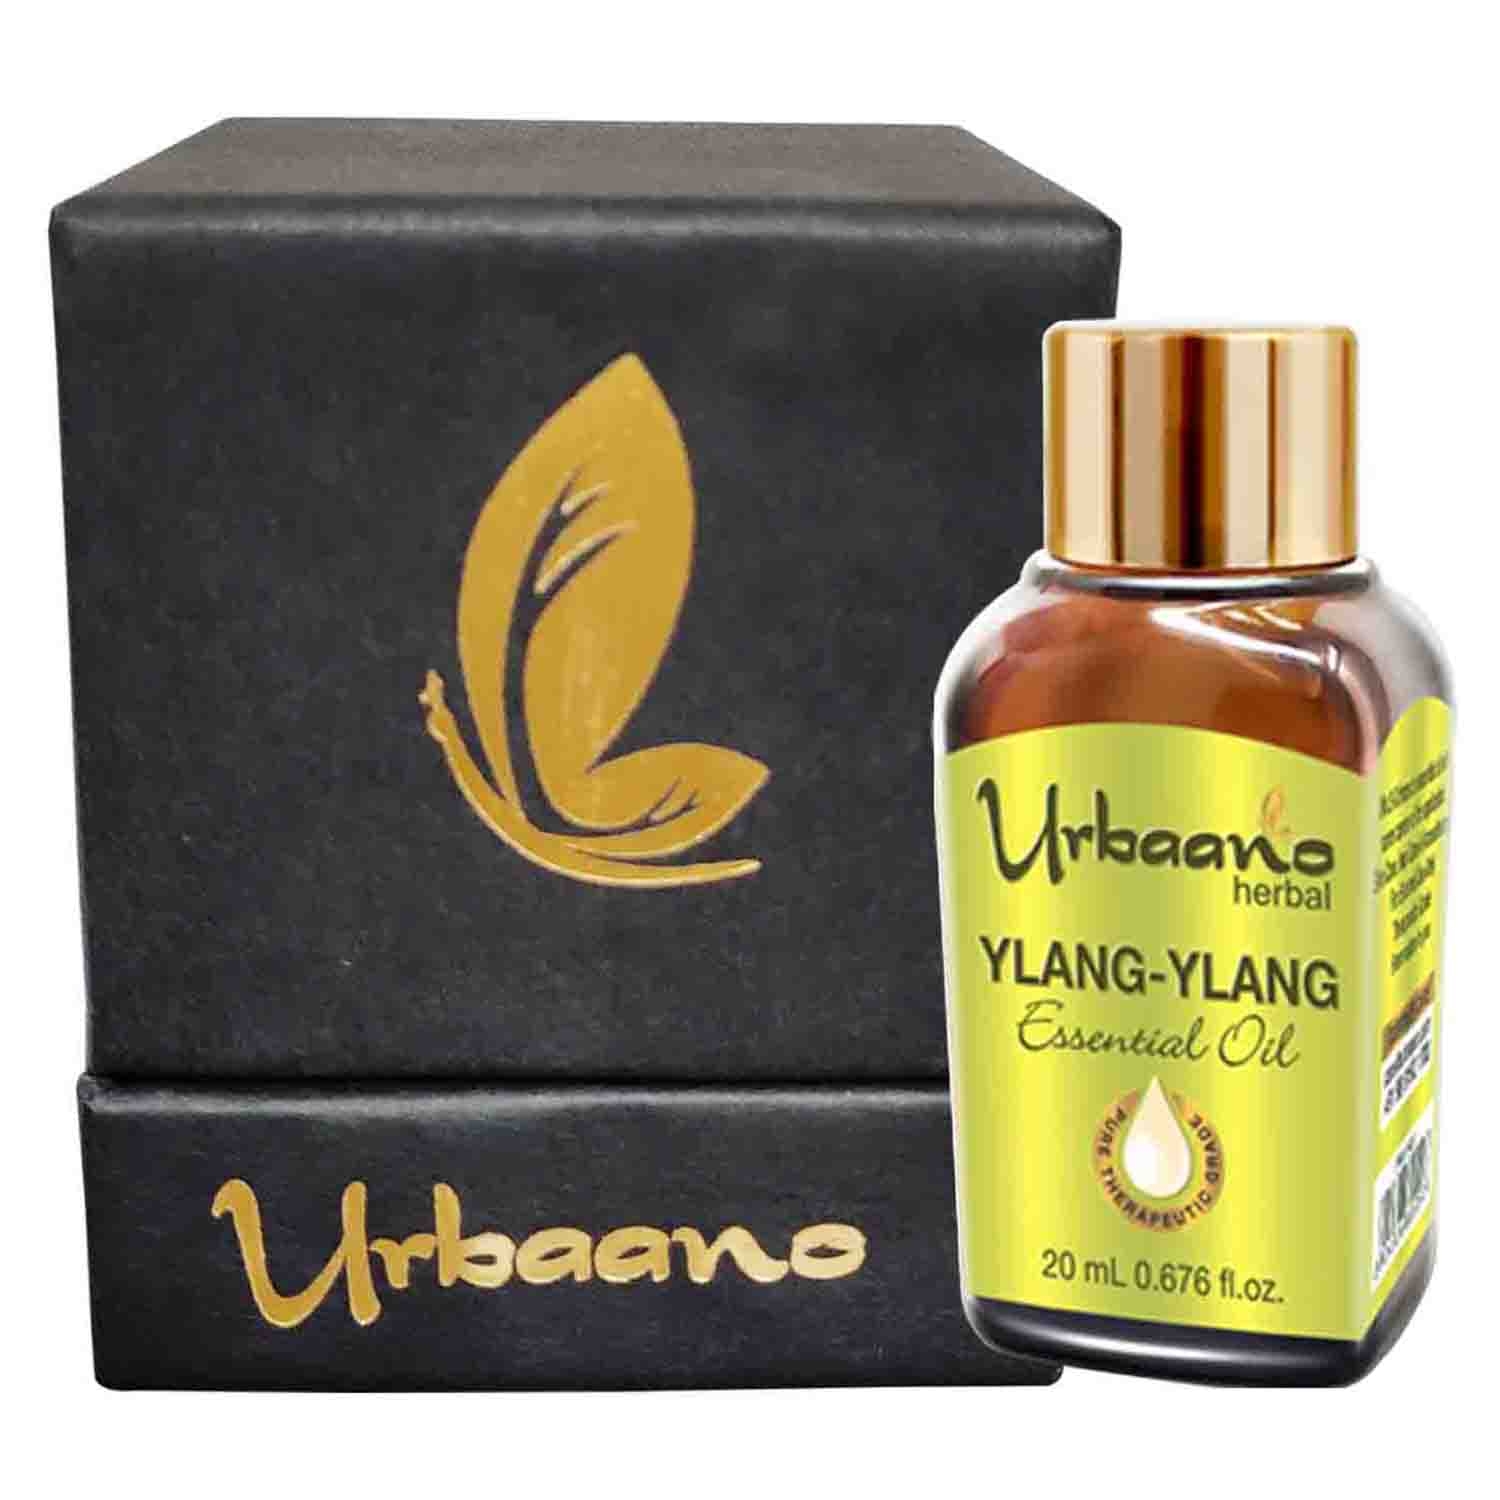 Urbaano Herbal | Urbaano Herbal Ylang Ylang Essential Oil for Skin & Aroma Natural & Pure - 20ml 0